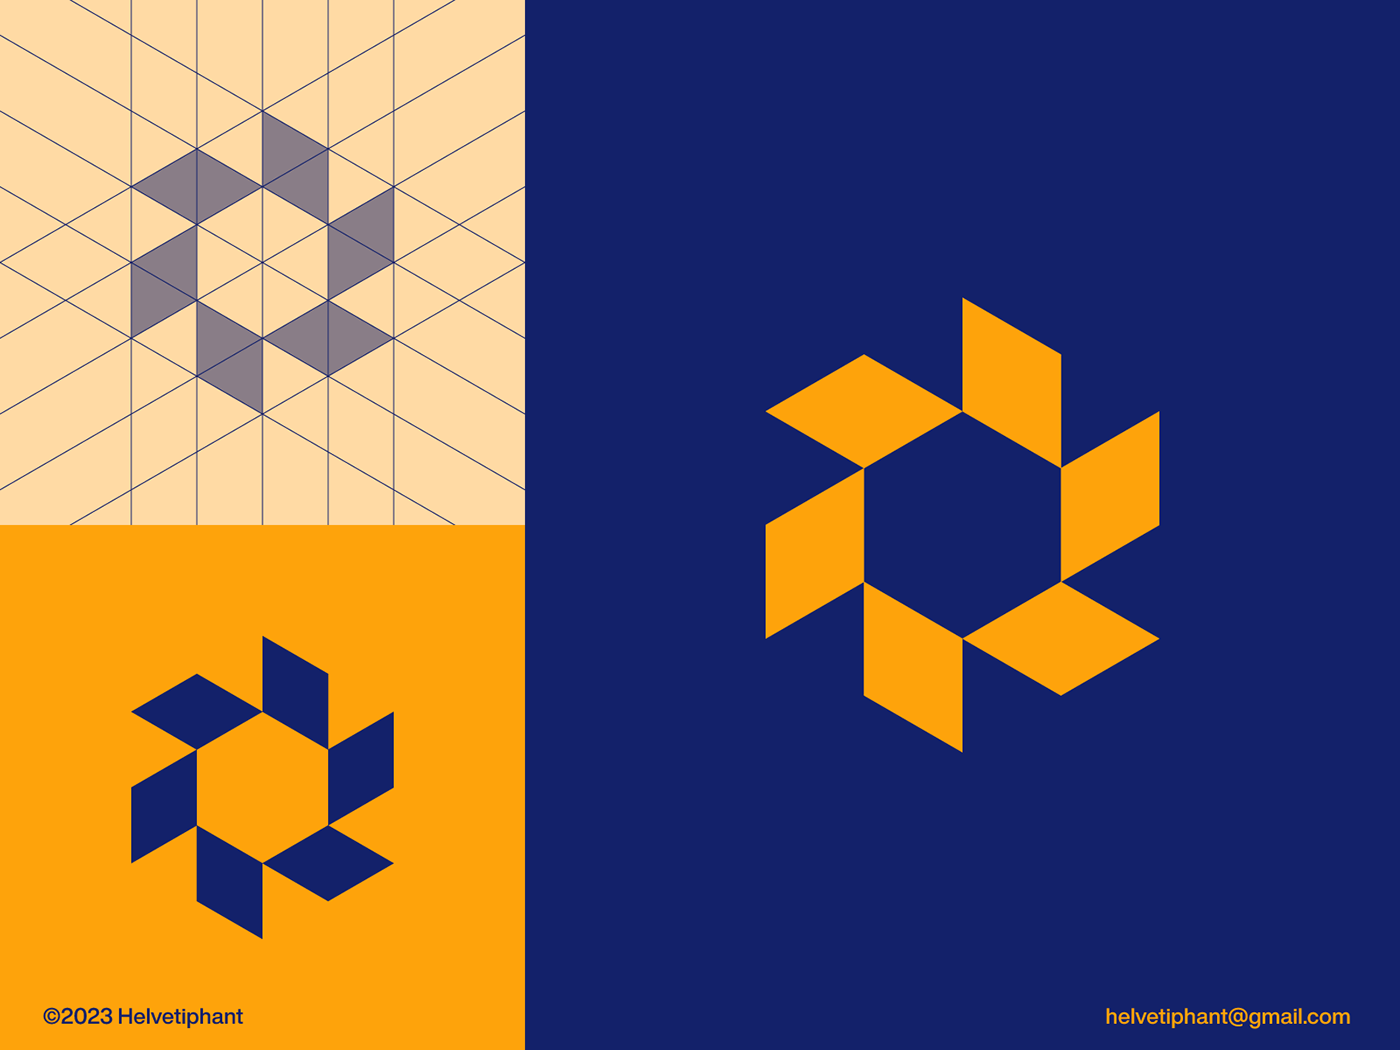 Solar Energy logo concept featuring panels to create an abstract sun logo